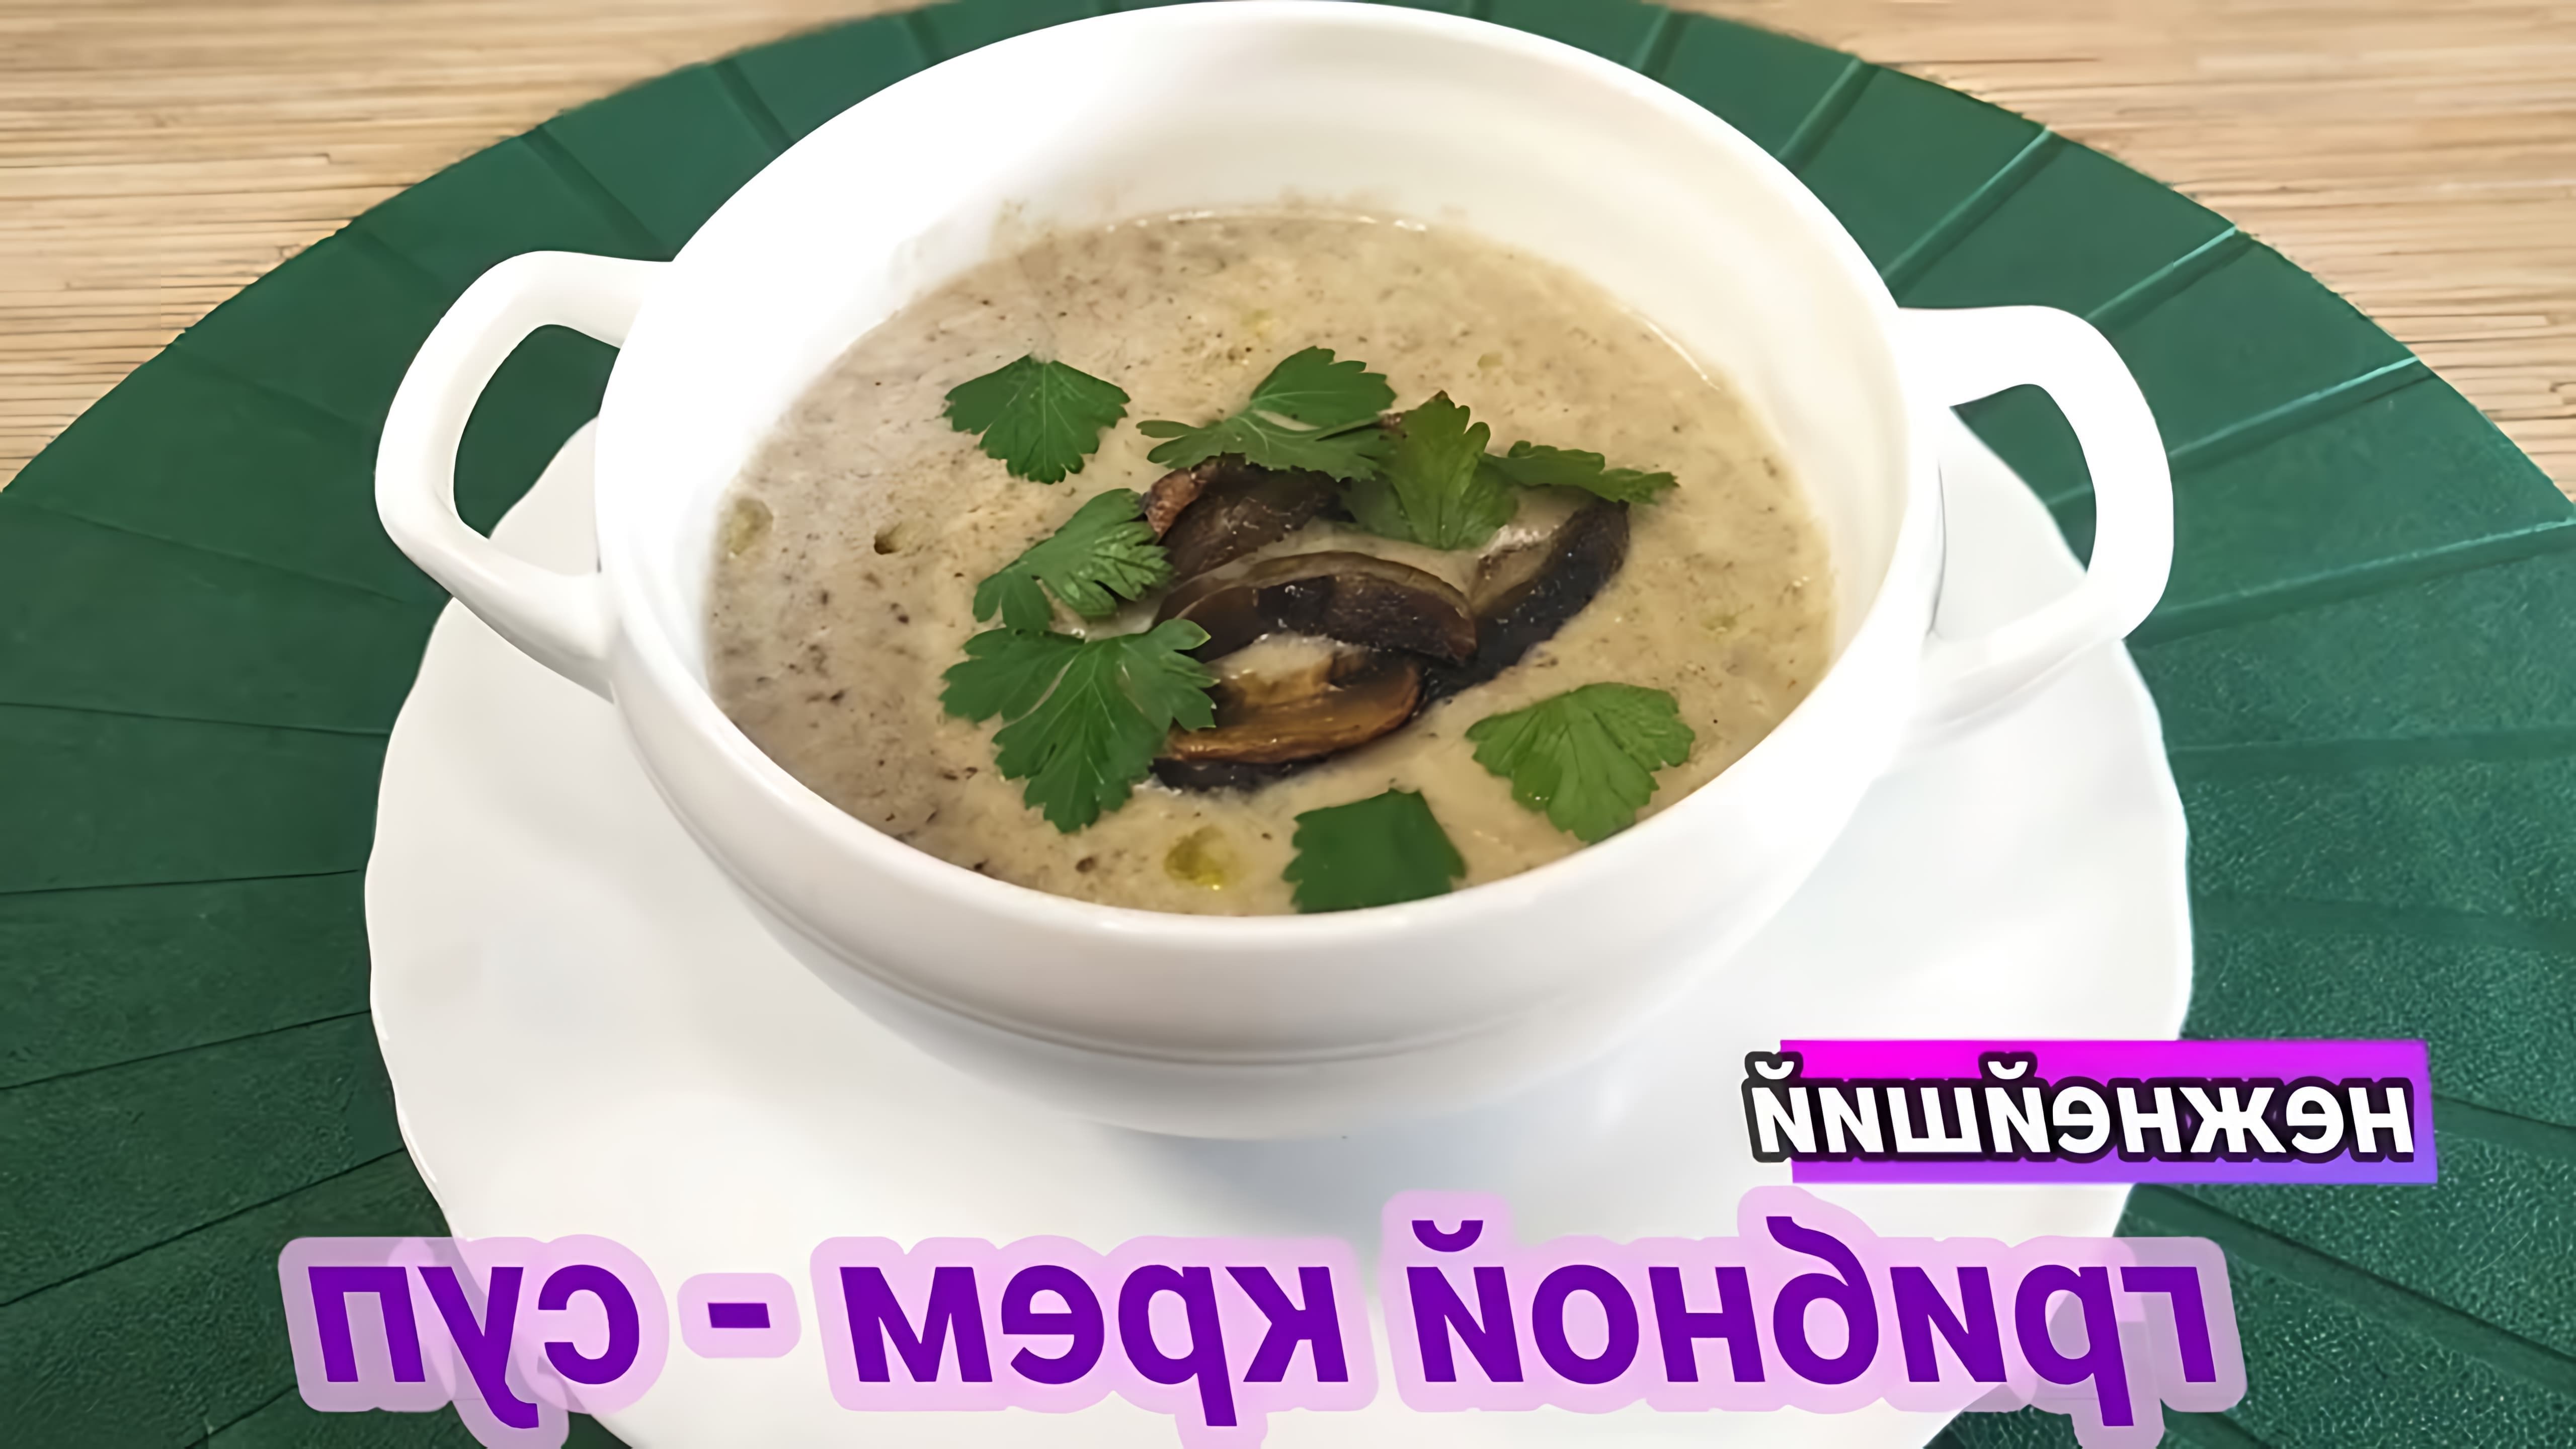 В этом видео-ролике вы увидите, как приготовить нежнейший грибной крем суп без использования сливок